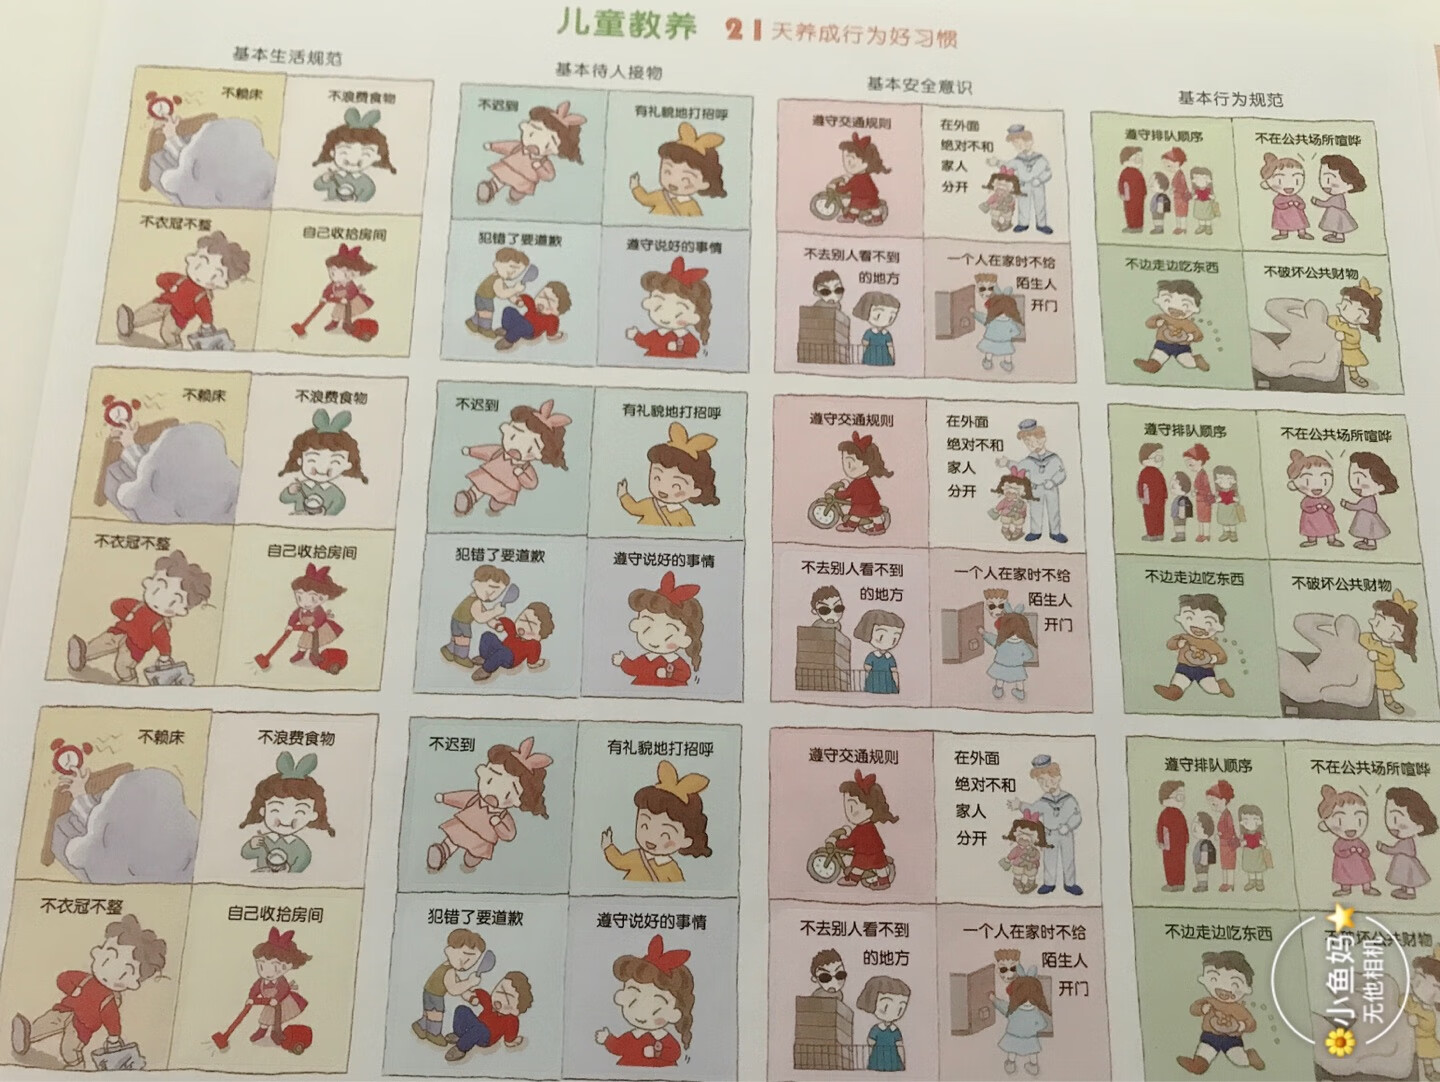 非常好的一套家教书，虽然有的是日本独有的礼仪，但是完全不影响学习